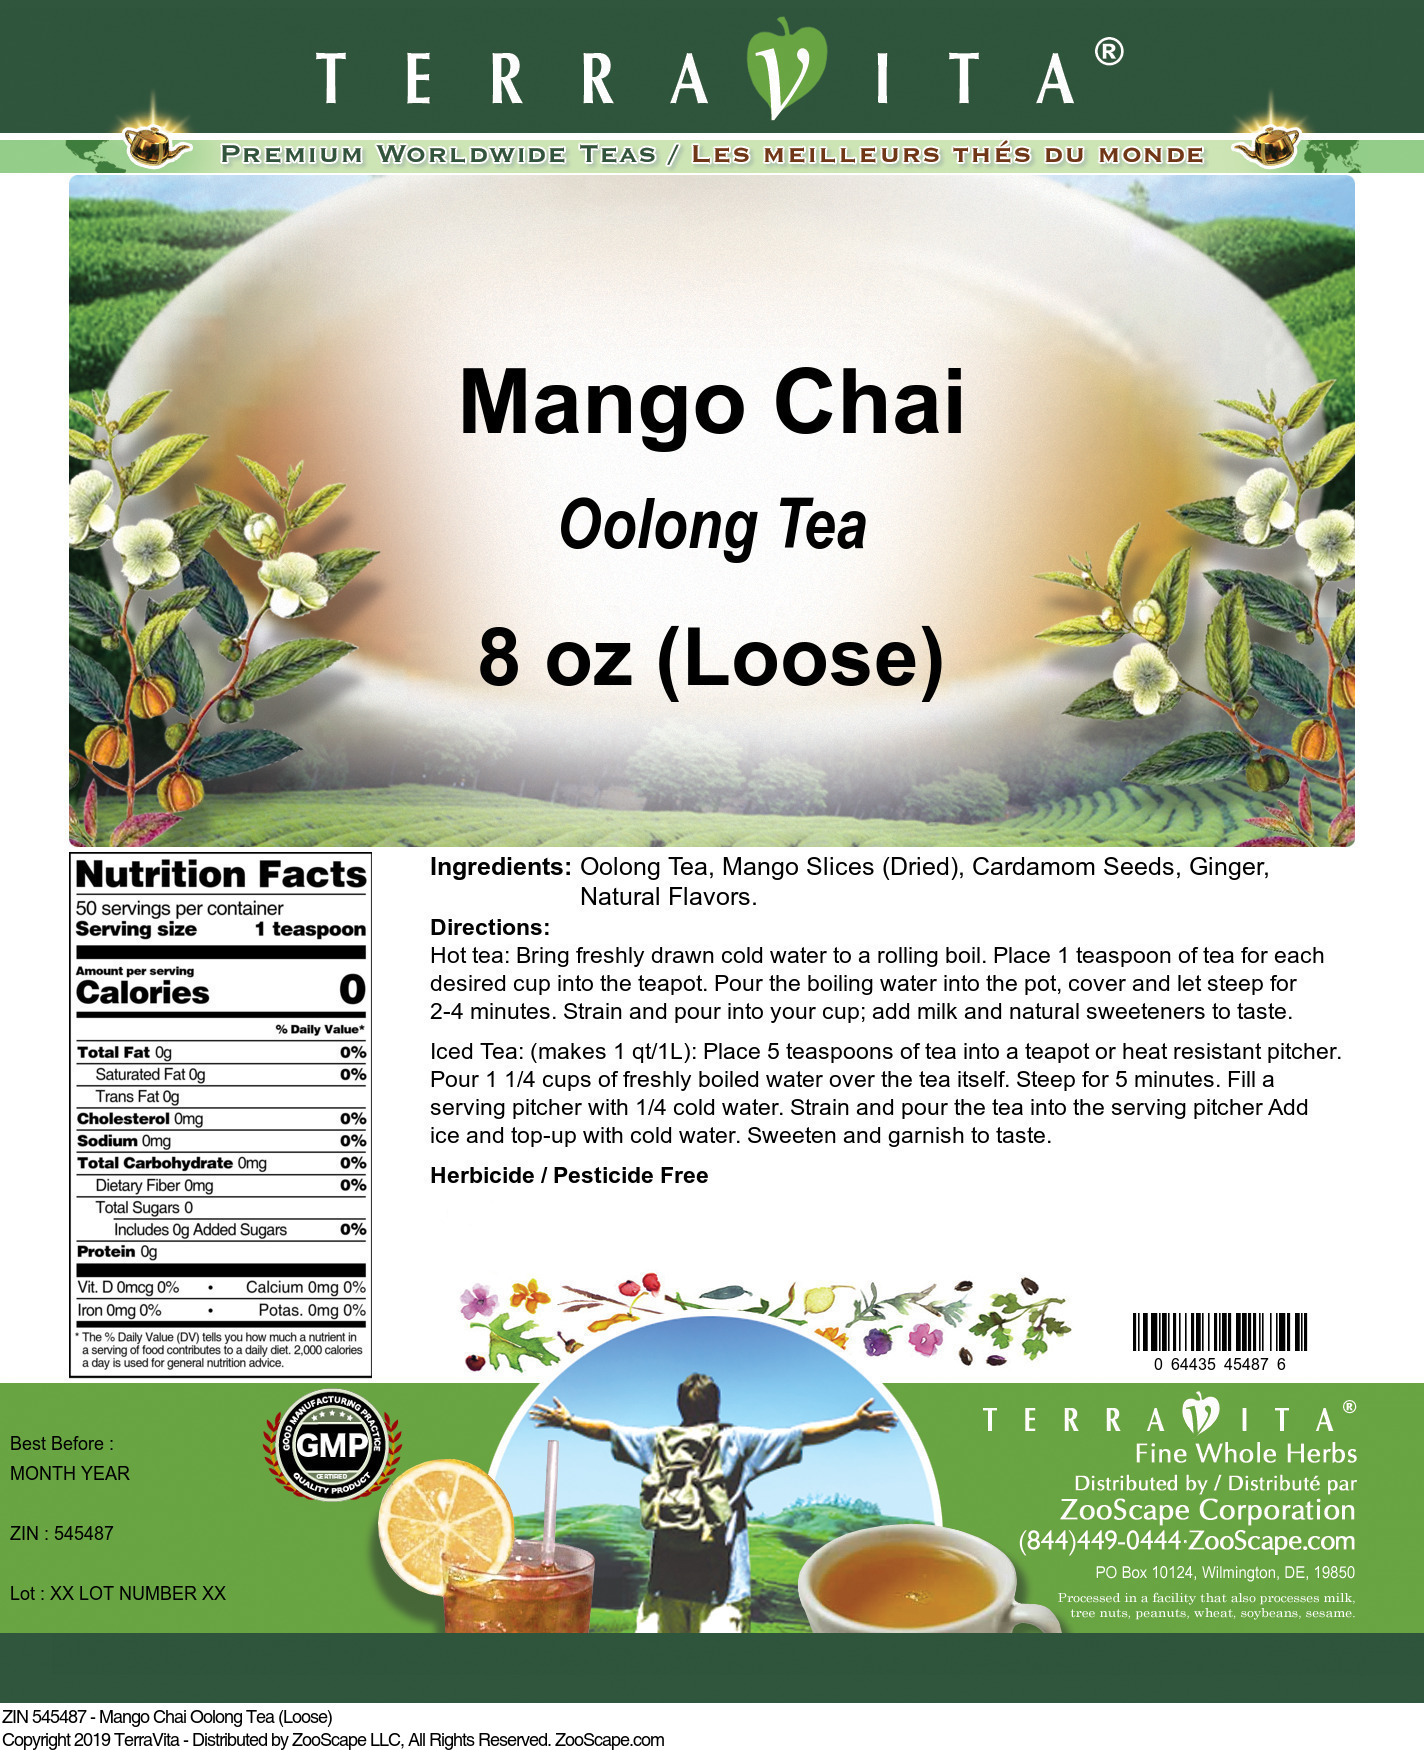 Mango Chai Oolong Tea (Loose) - Label